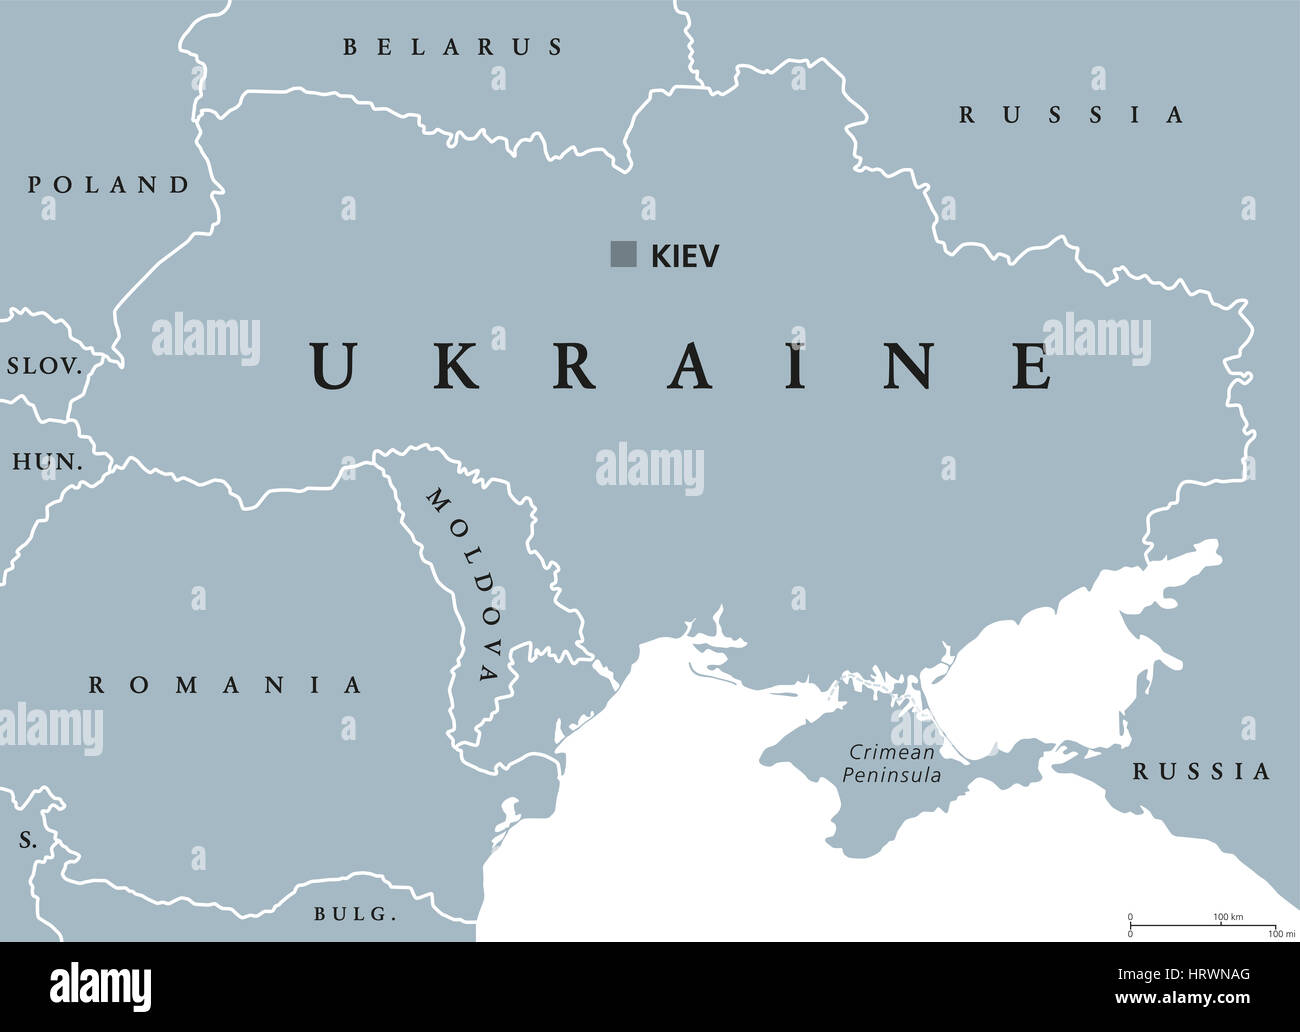 Ucraina mappa politico con capitale Kiev, i confini nazionali, Crimea, penisola e paesi vicini. Stato in Europa orientale. Foto Stock